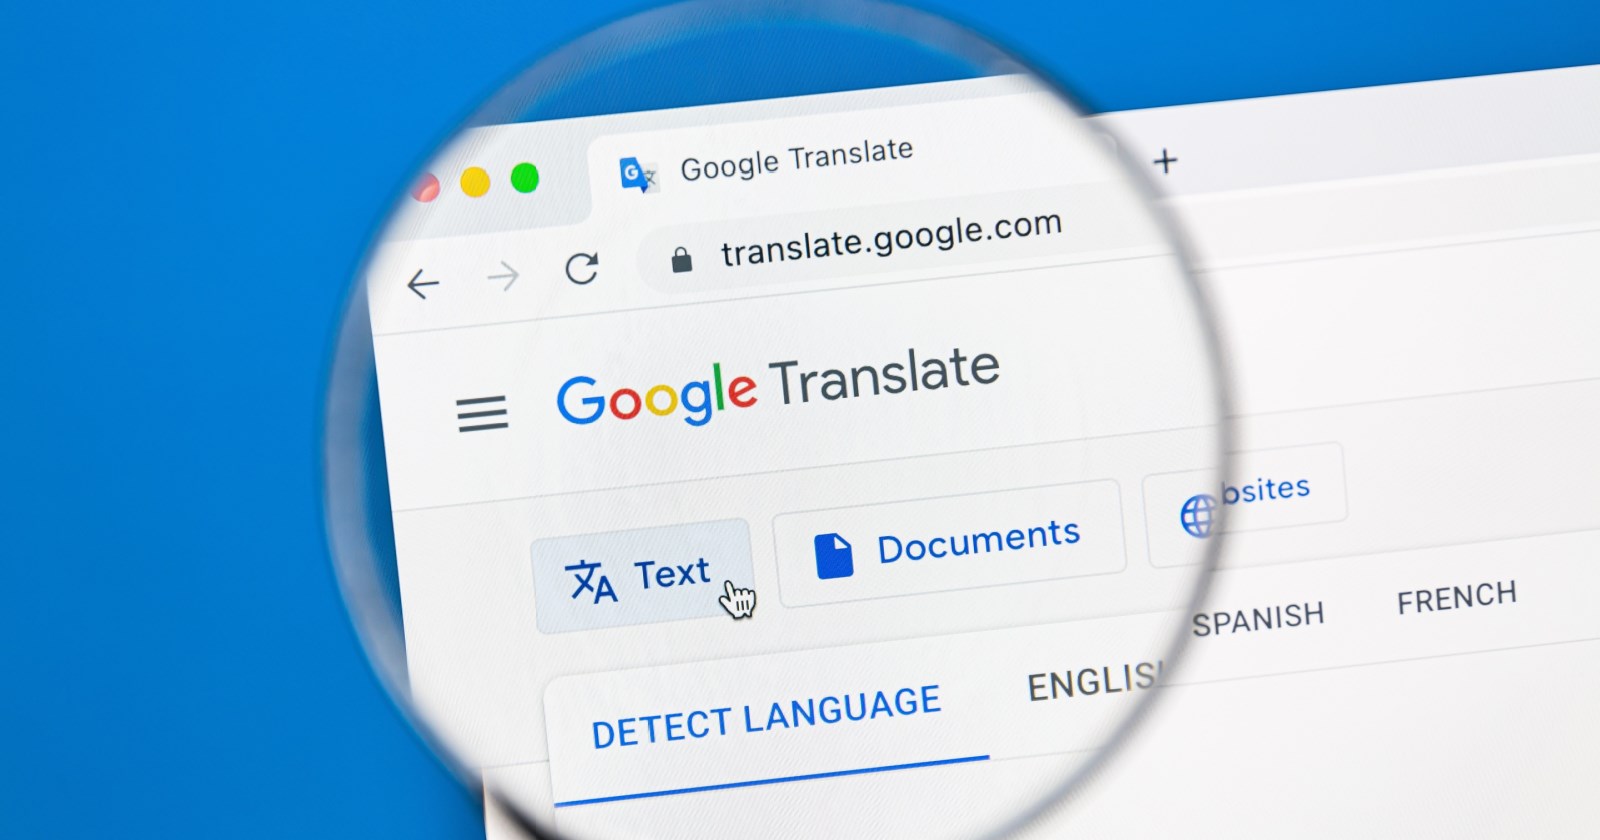 Google Translate’in yeni özelliği ne? Google Translate yeni çeviri özelliği nedir?